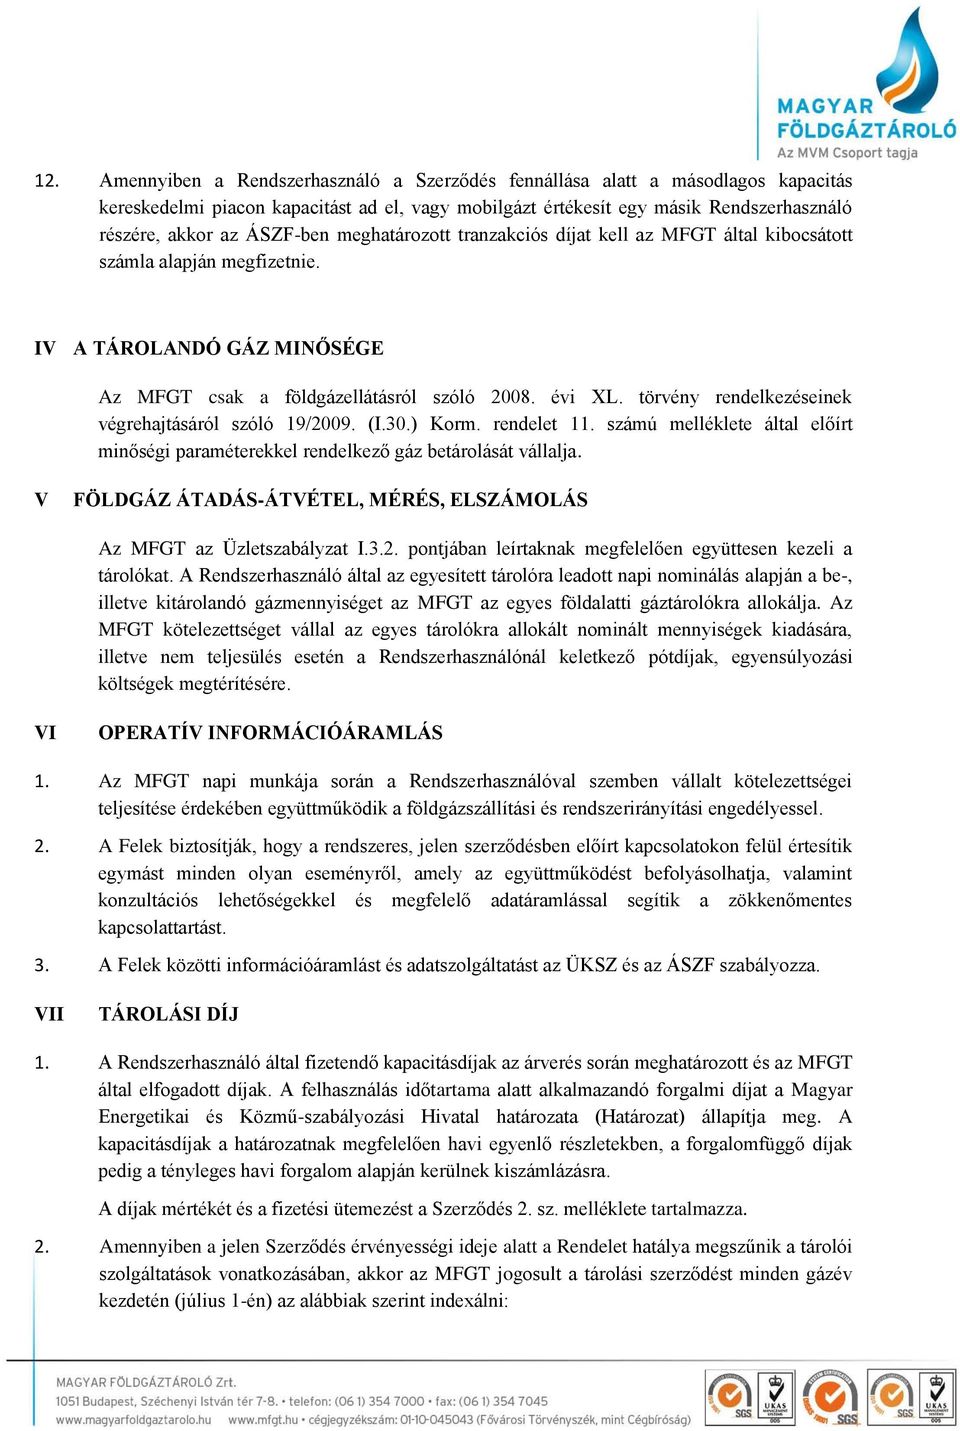 törvény rendelkezéseinek végrehajtásáról szóló 19/2009. (I.30.) Korm. rendelet 11. számú melléklete által előírt minőségi paraméterekkel rendelkező gáz betárolását vállalja.